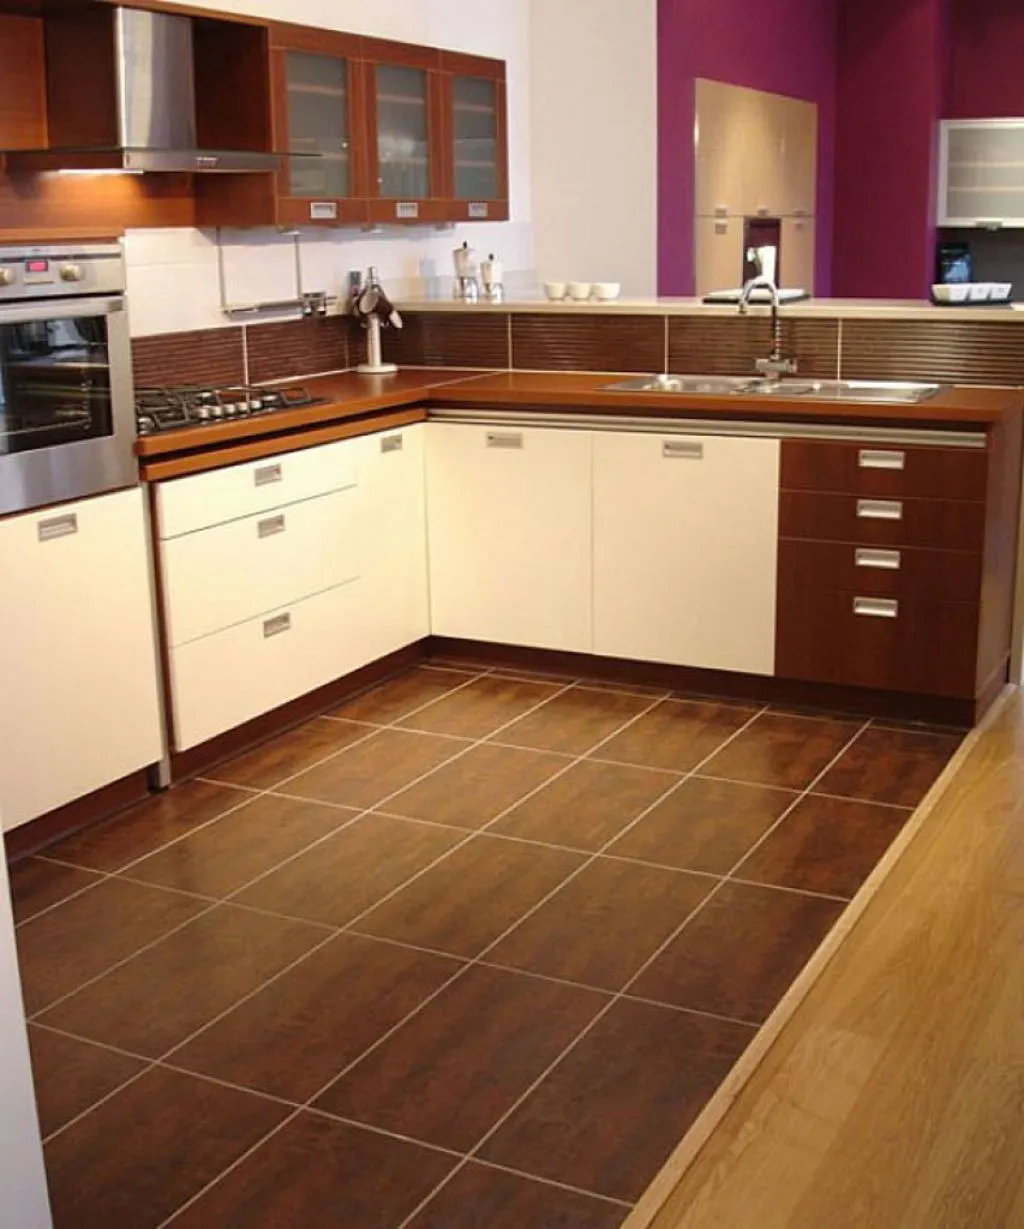 плитка и линолеум на кухне комбинированный пол фото